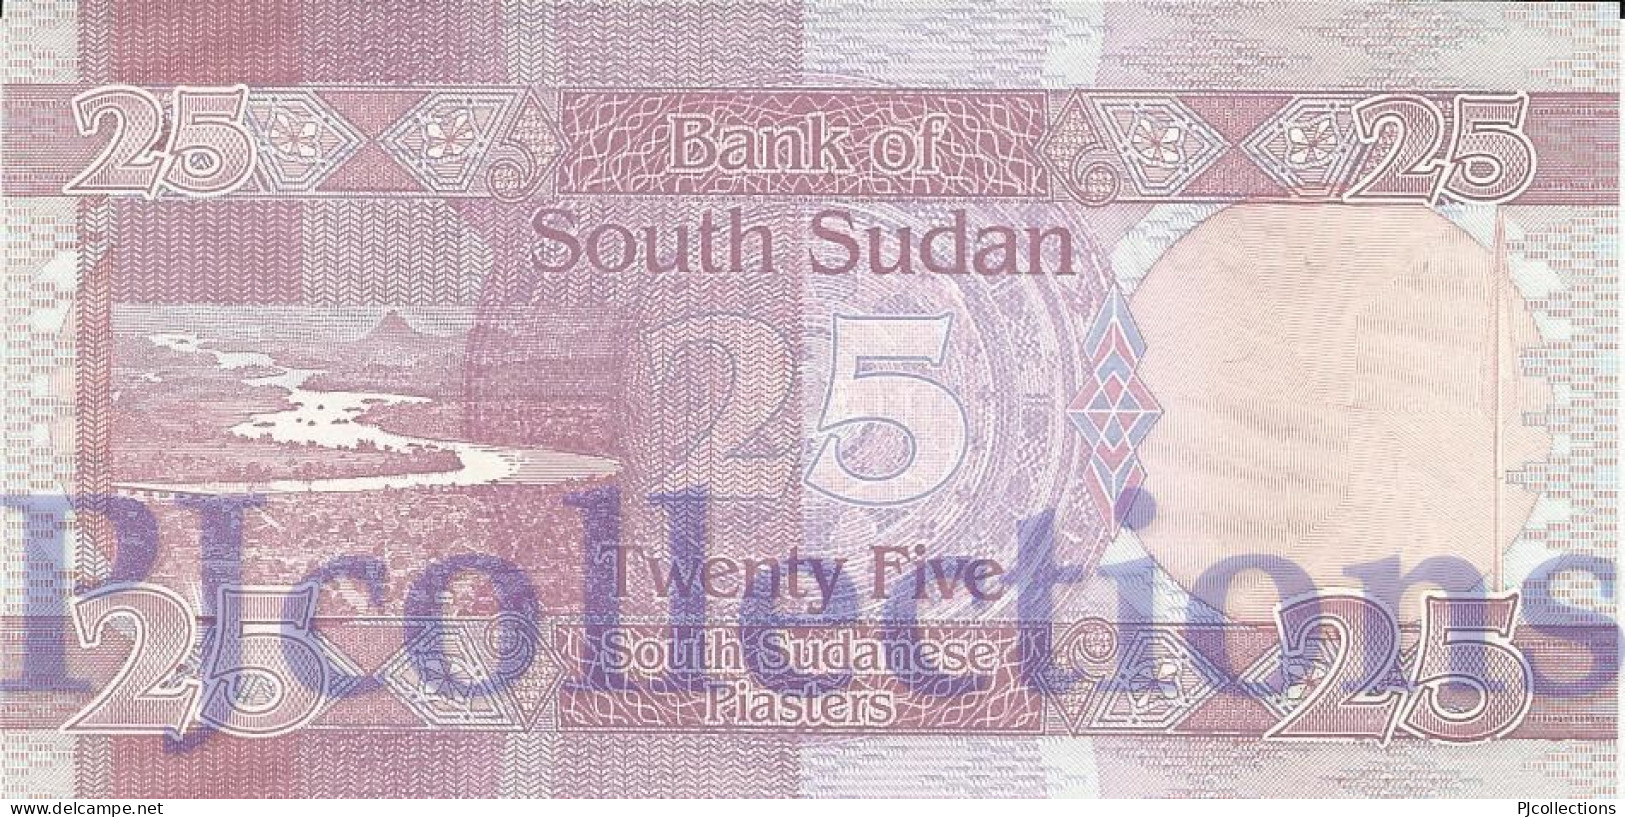 SOUTH SUDAN 25 PIASTRES 2011 PICK 3 UNC RARE - South Sudan